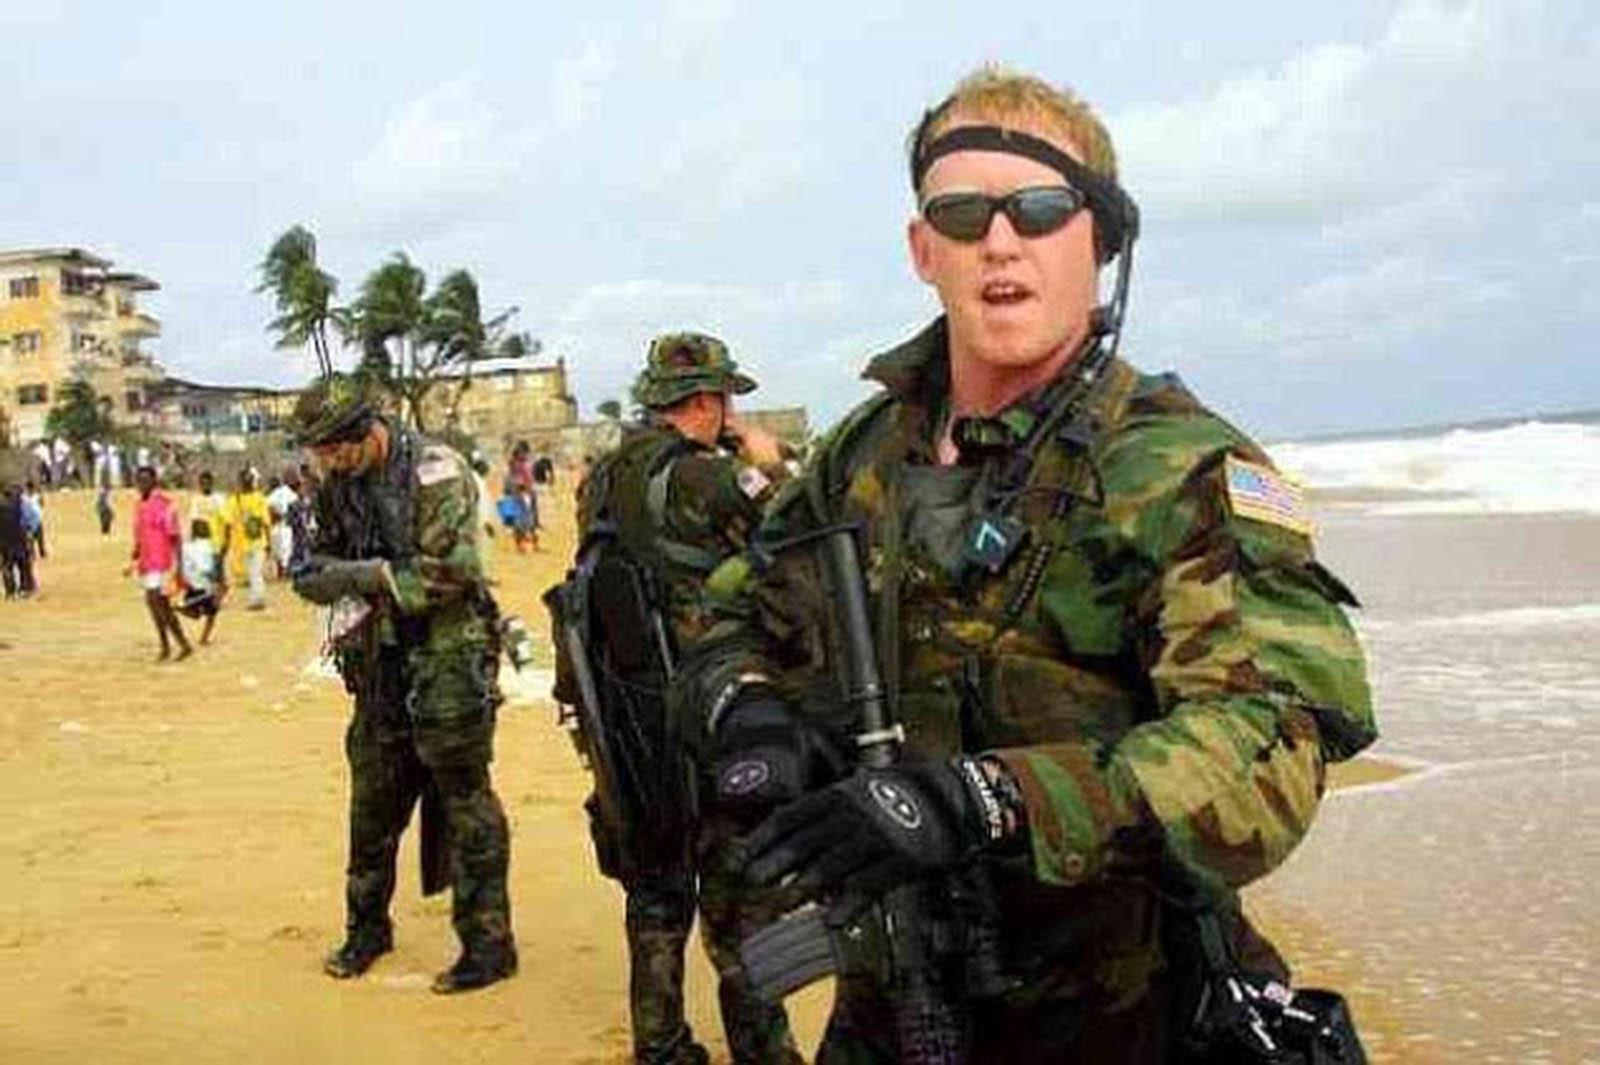 Navy Seal-soldaten Rob O'Neil träder fram och berättar att det var han som dödade al-Qaidaledaren Usama bin Ladin.